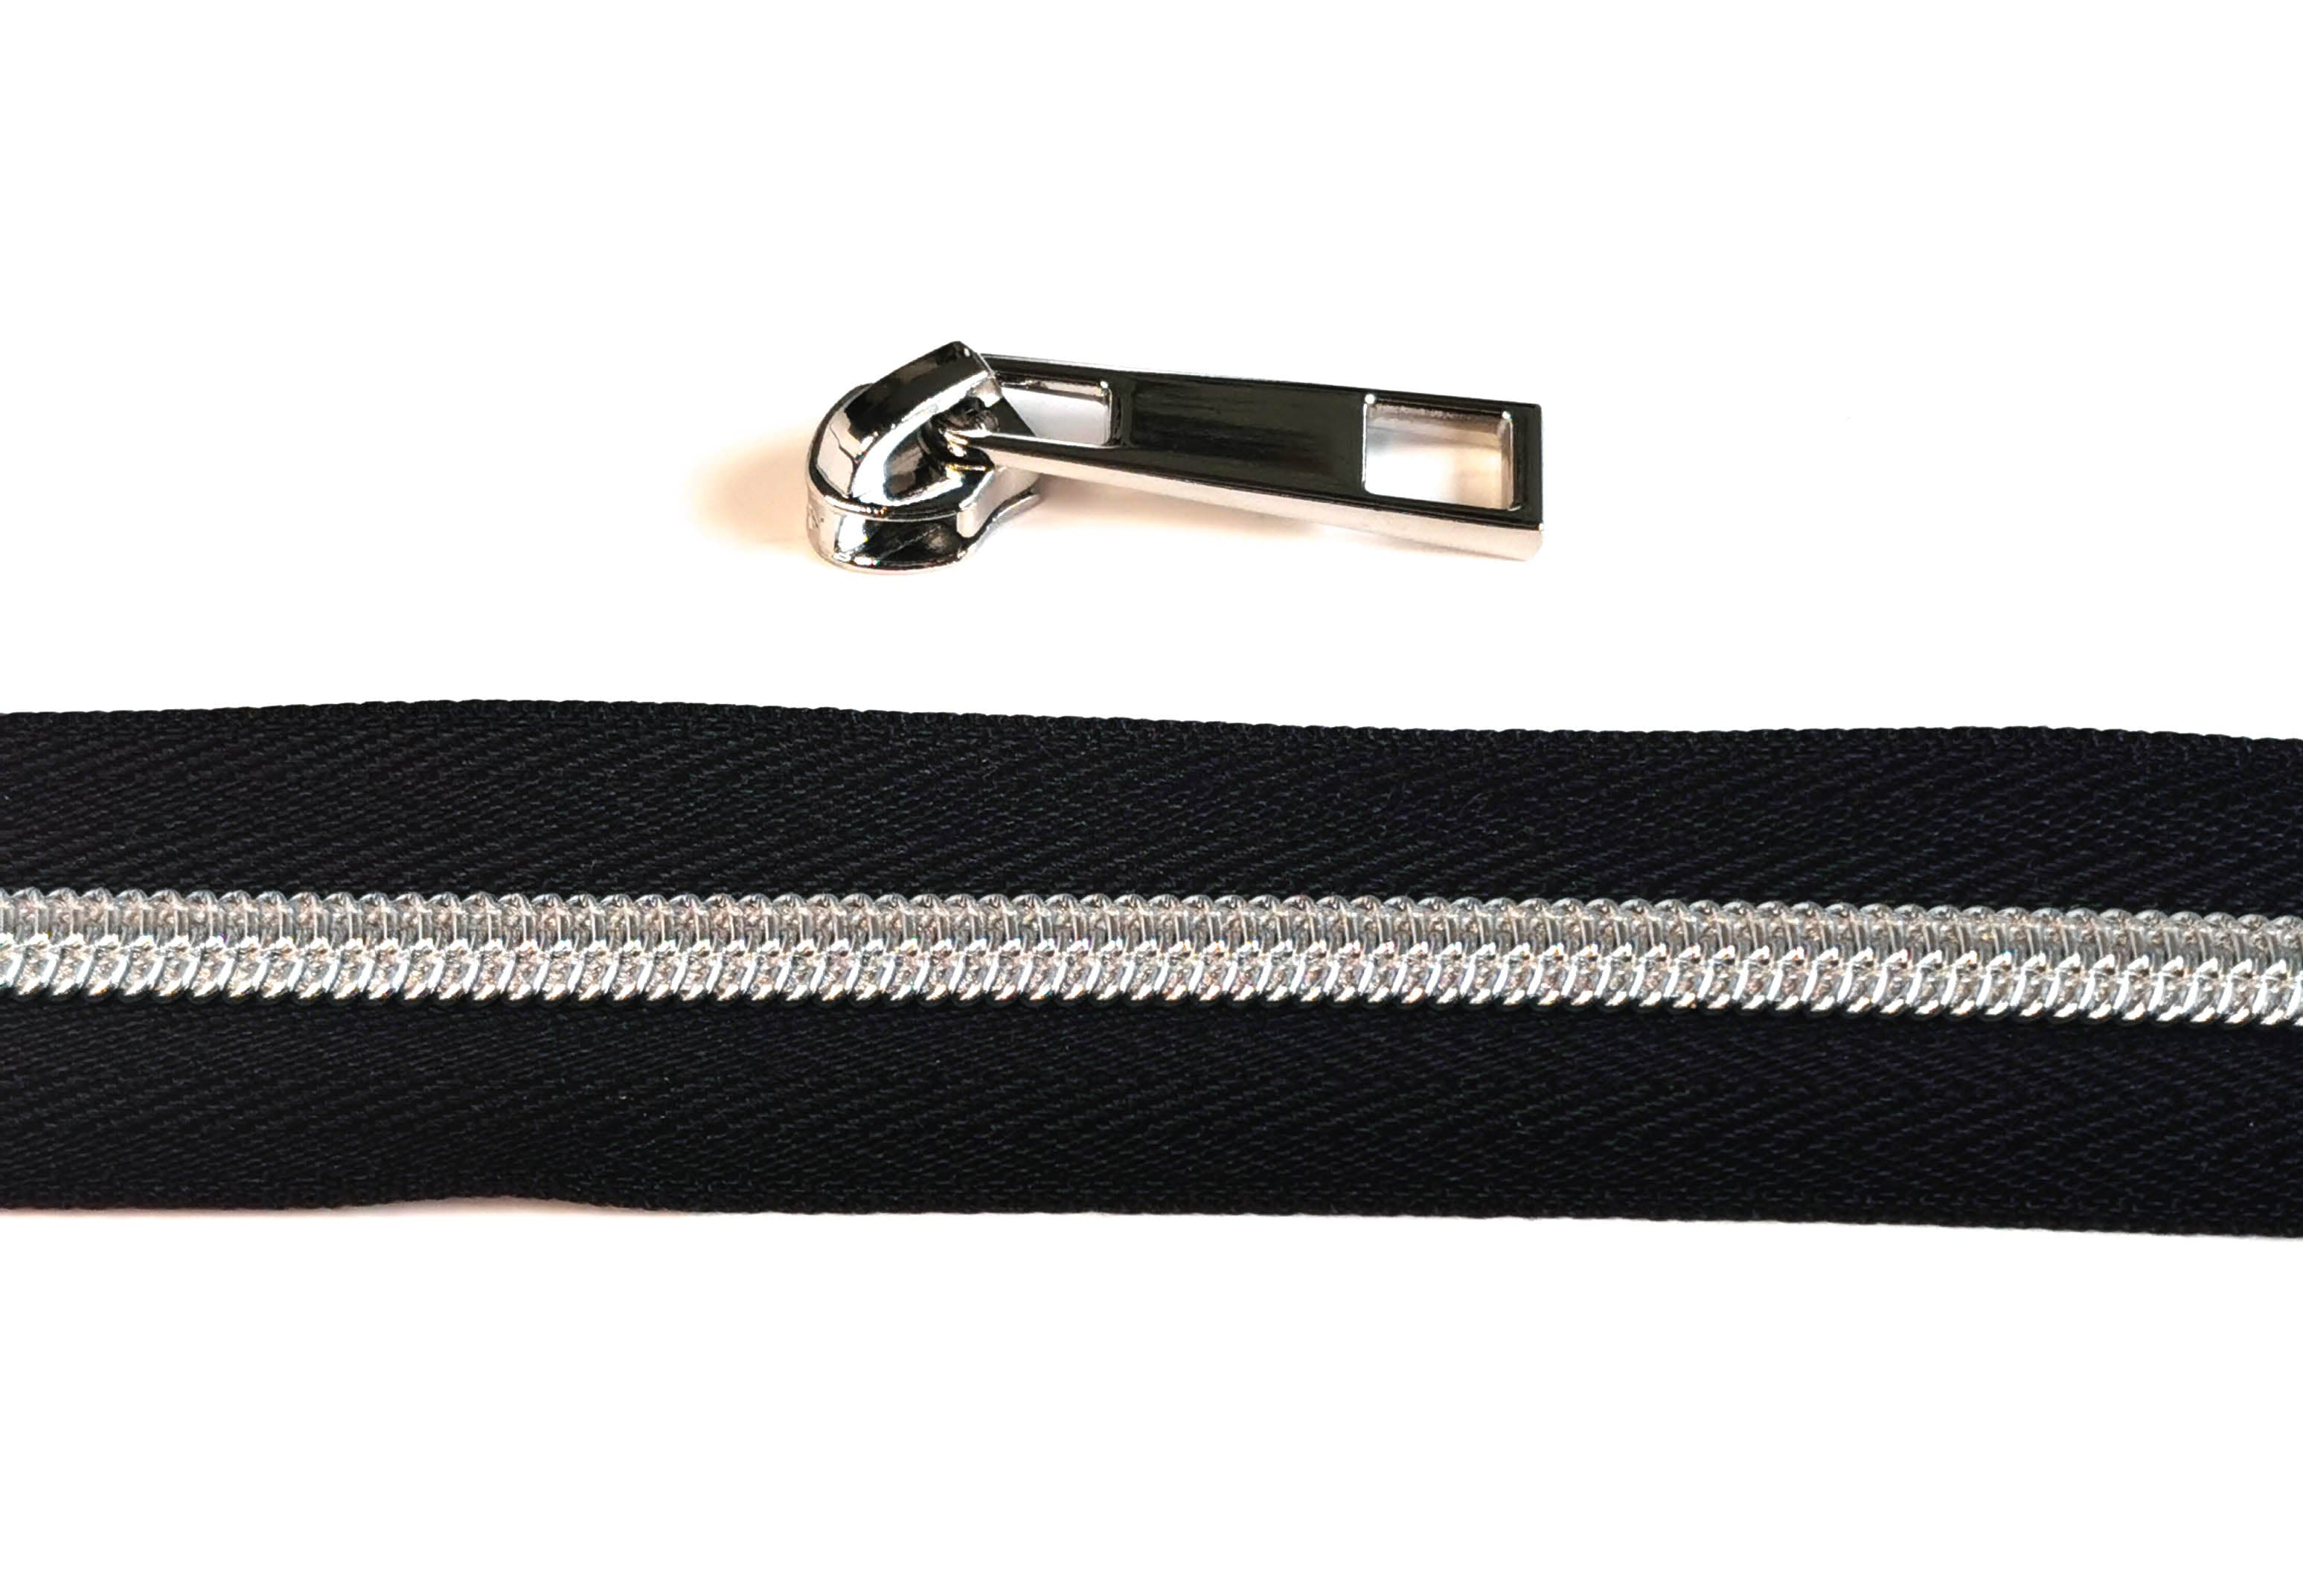 Zipper by the Yard (metre). 2.5m of #5 Zipper tape with 8 Zipper Sliders/Pullers By Kiwi Bagineers - Kiwi Bagineers